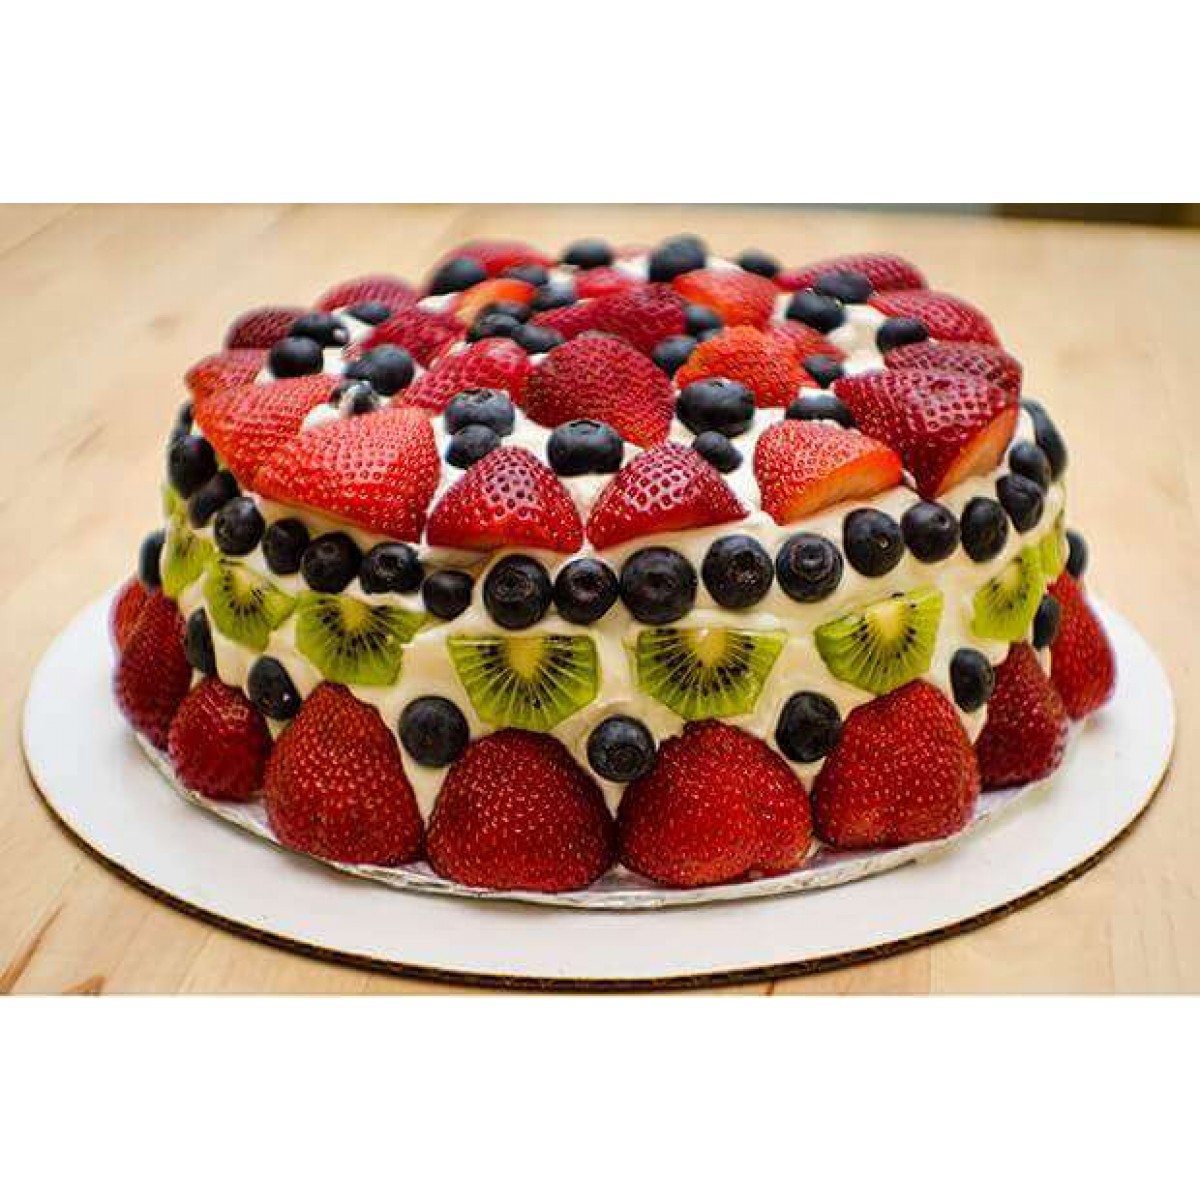 Mixed Fruit Cake - Fay Da Bakery